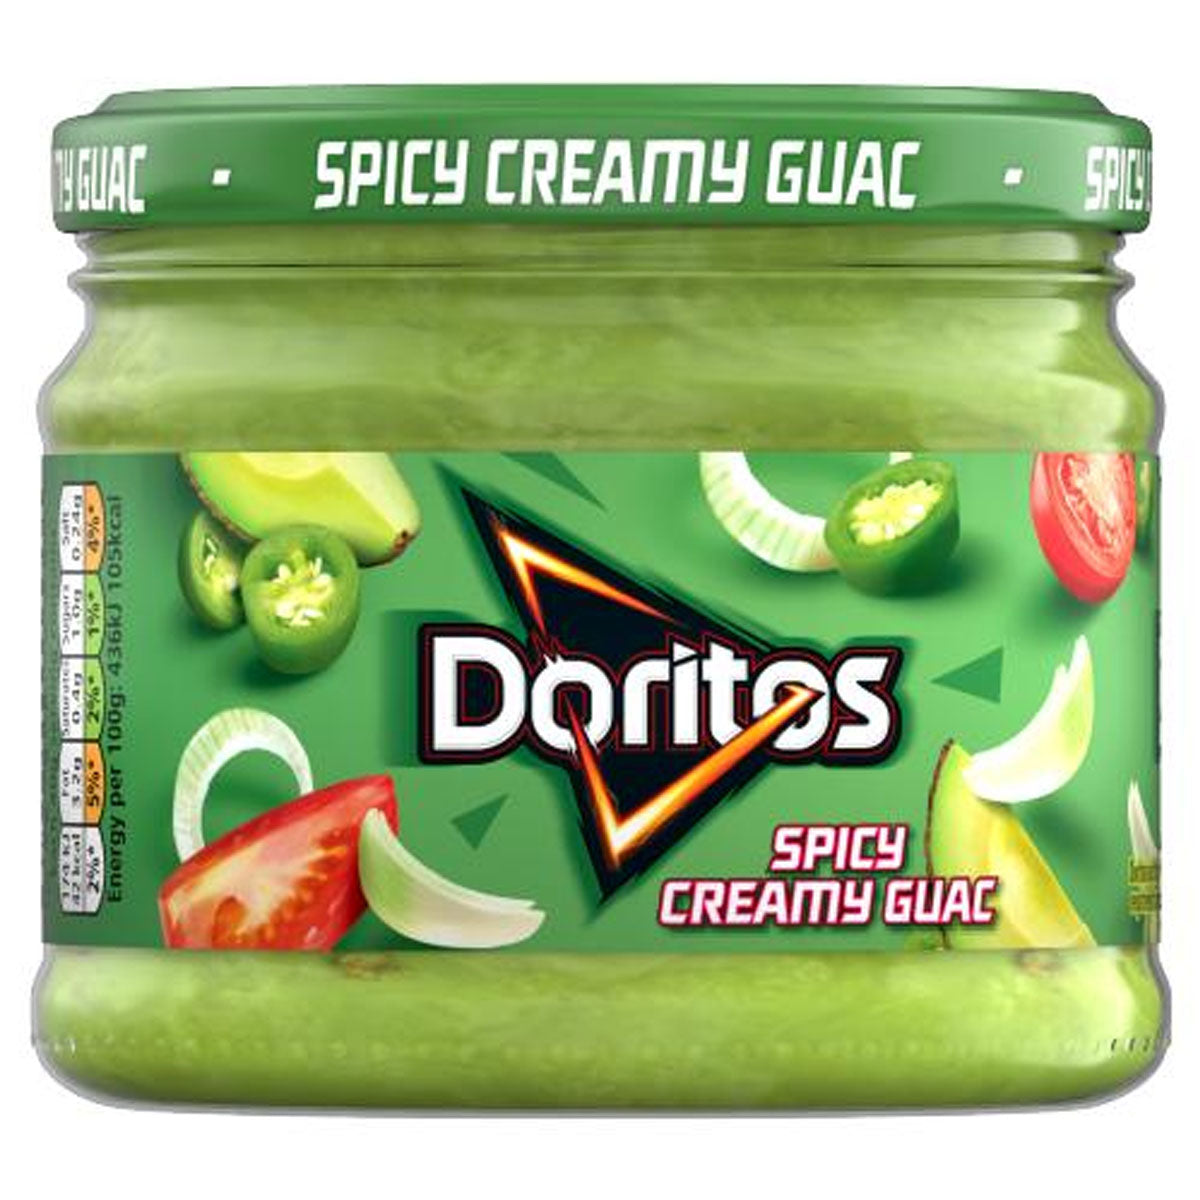 A jar of Doritos - Spicy Creamy Guacamole Sharing Dip - 270g.